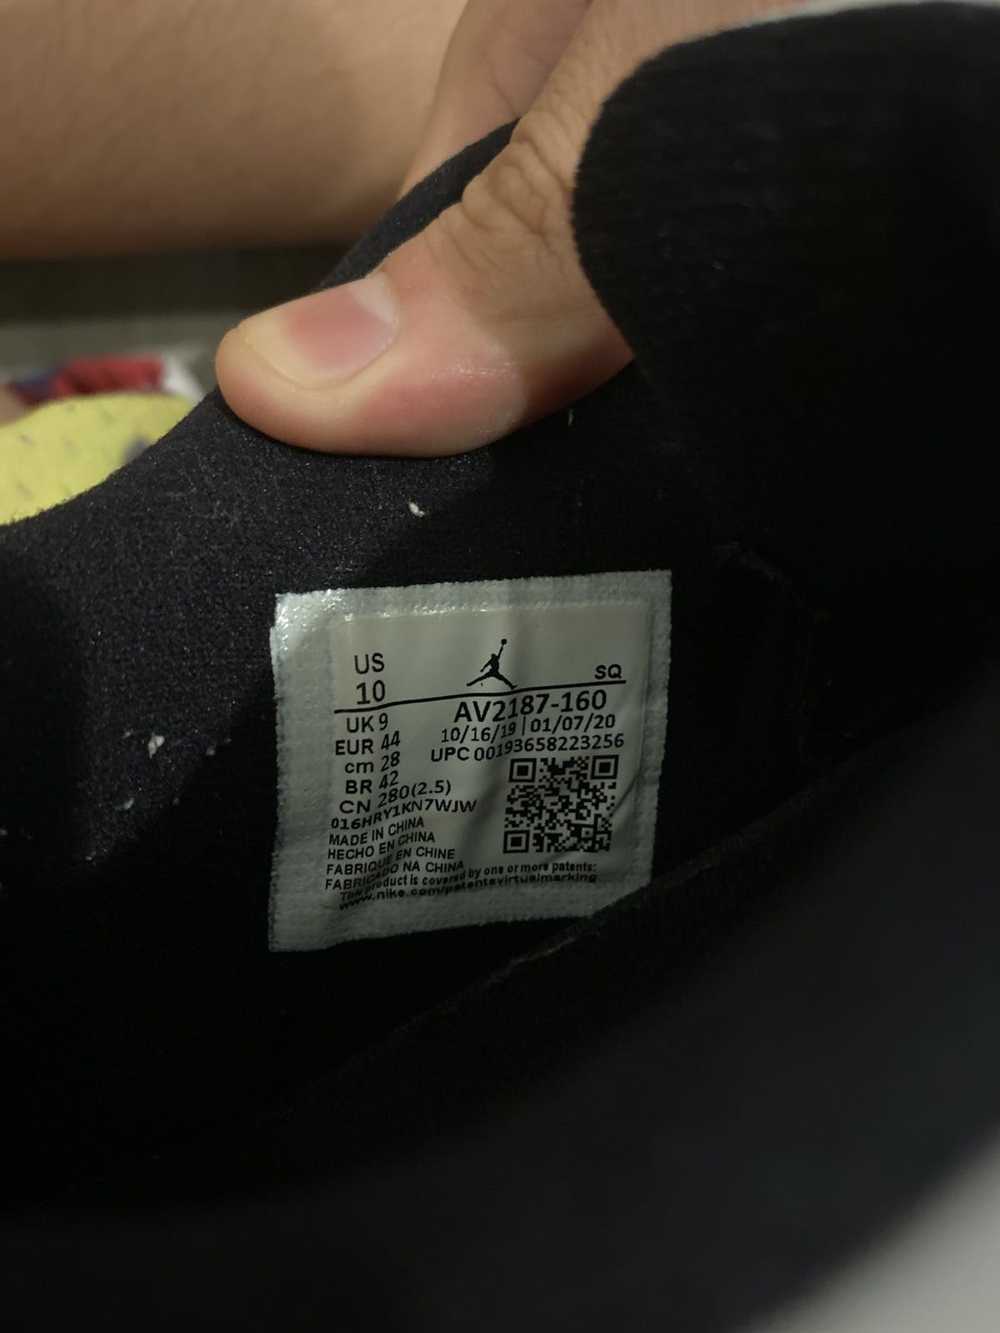 Jordan Brand × Nike Jordan 11 low concord bred - image 6